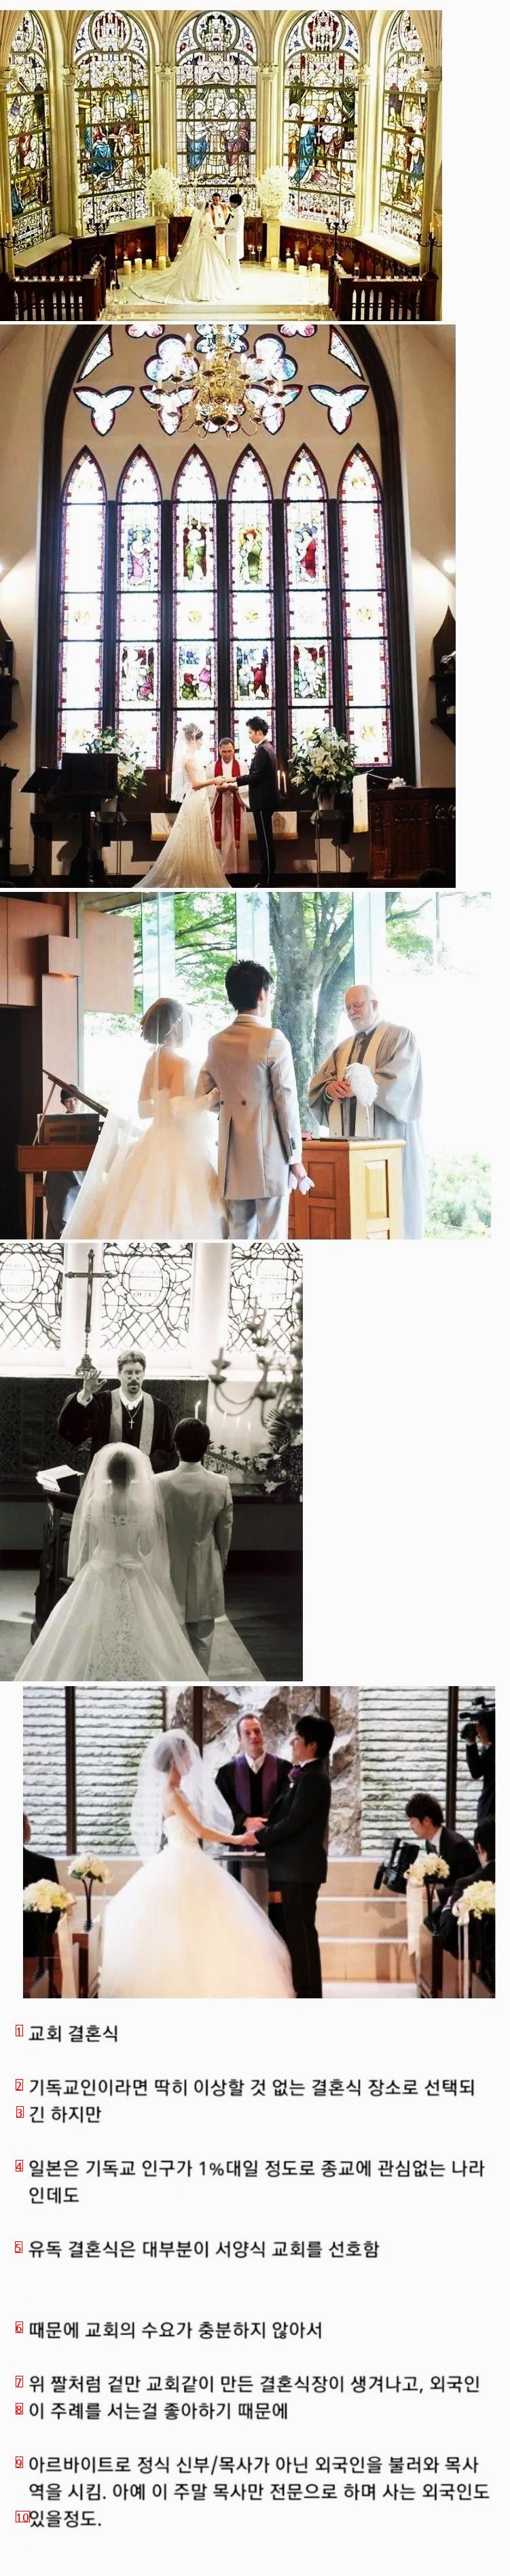 日本の面白い結婚式文化